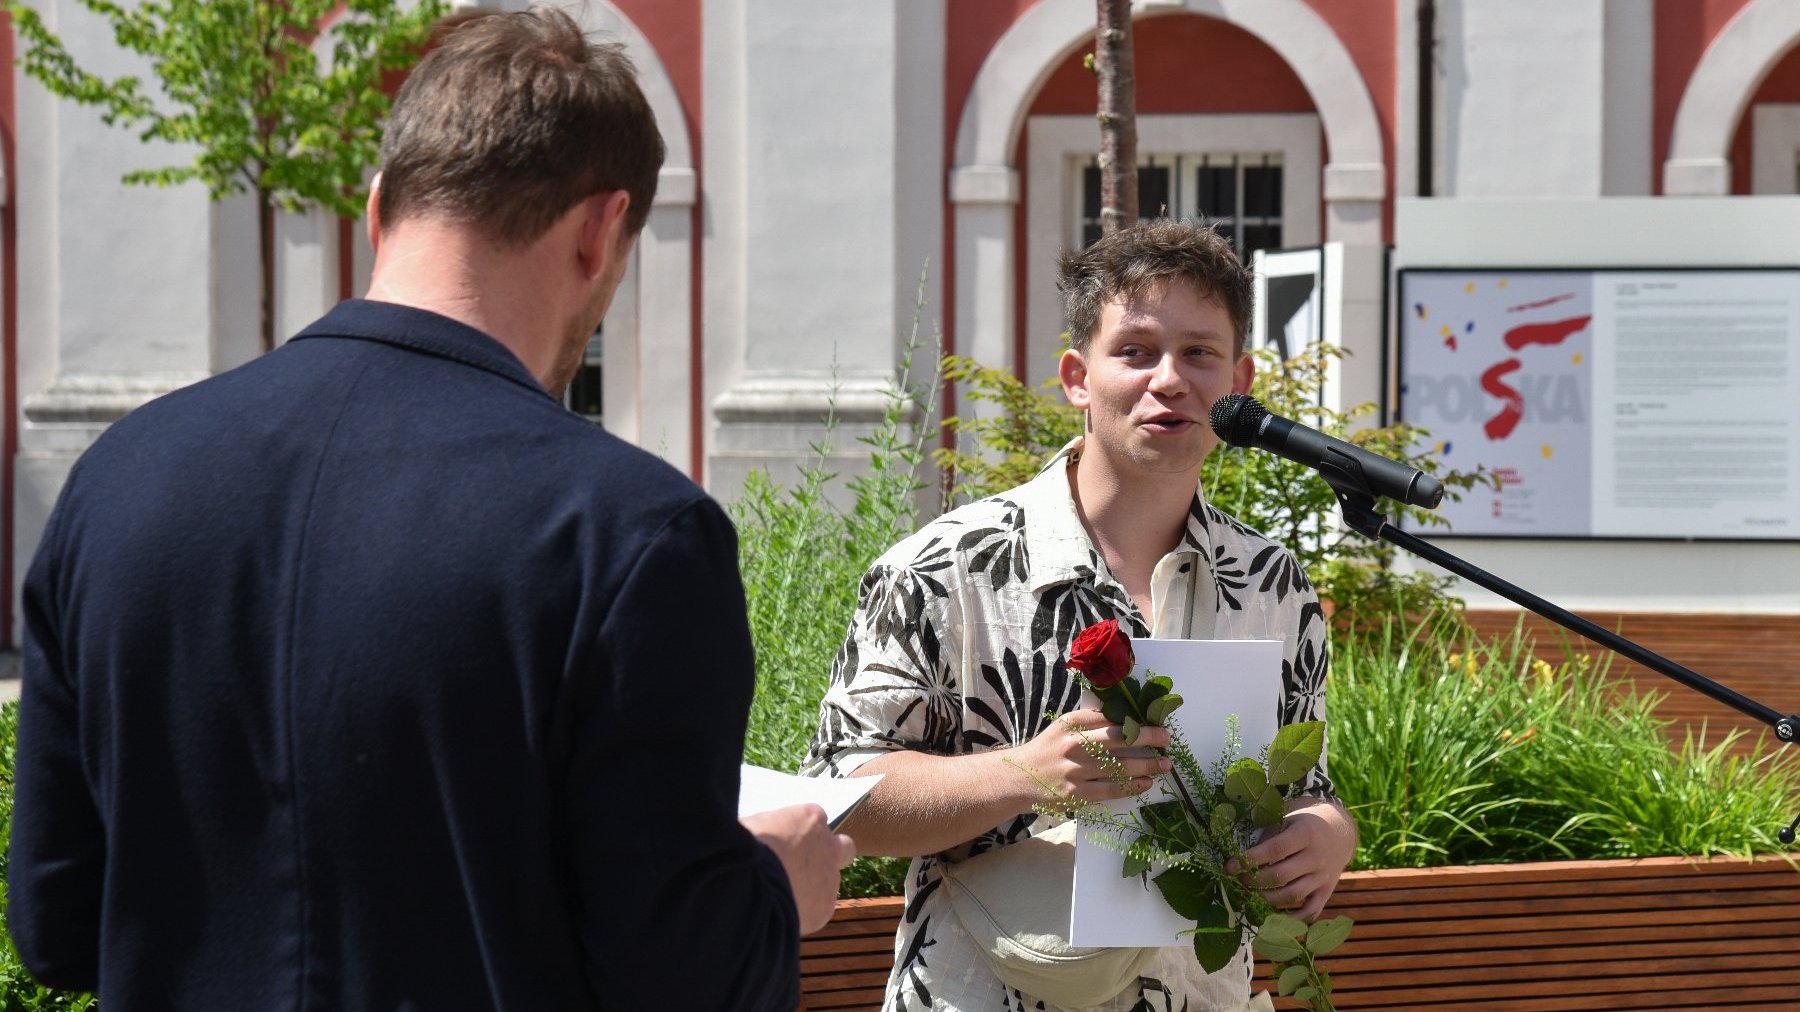 Na zdjęciu dwóch mężczyzn, jeden z nich, przy mikrofonie, trzyma różę